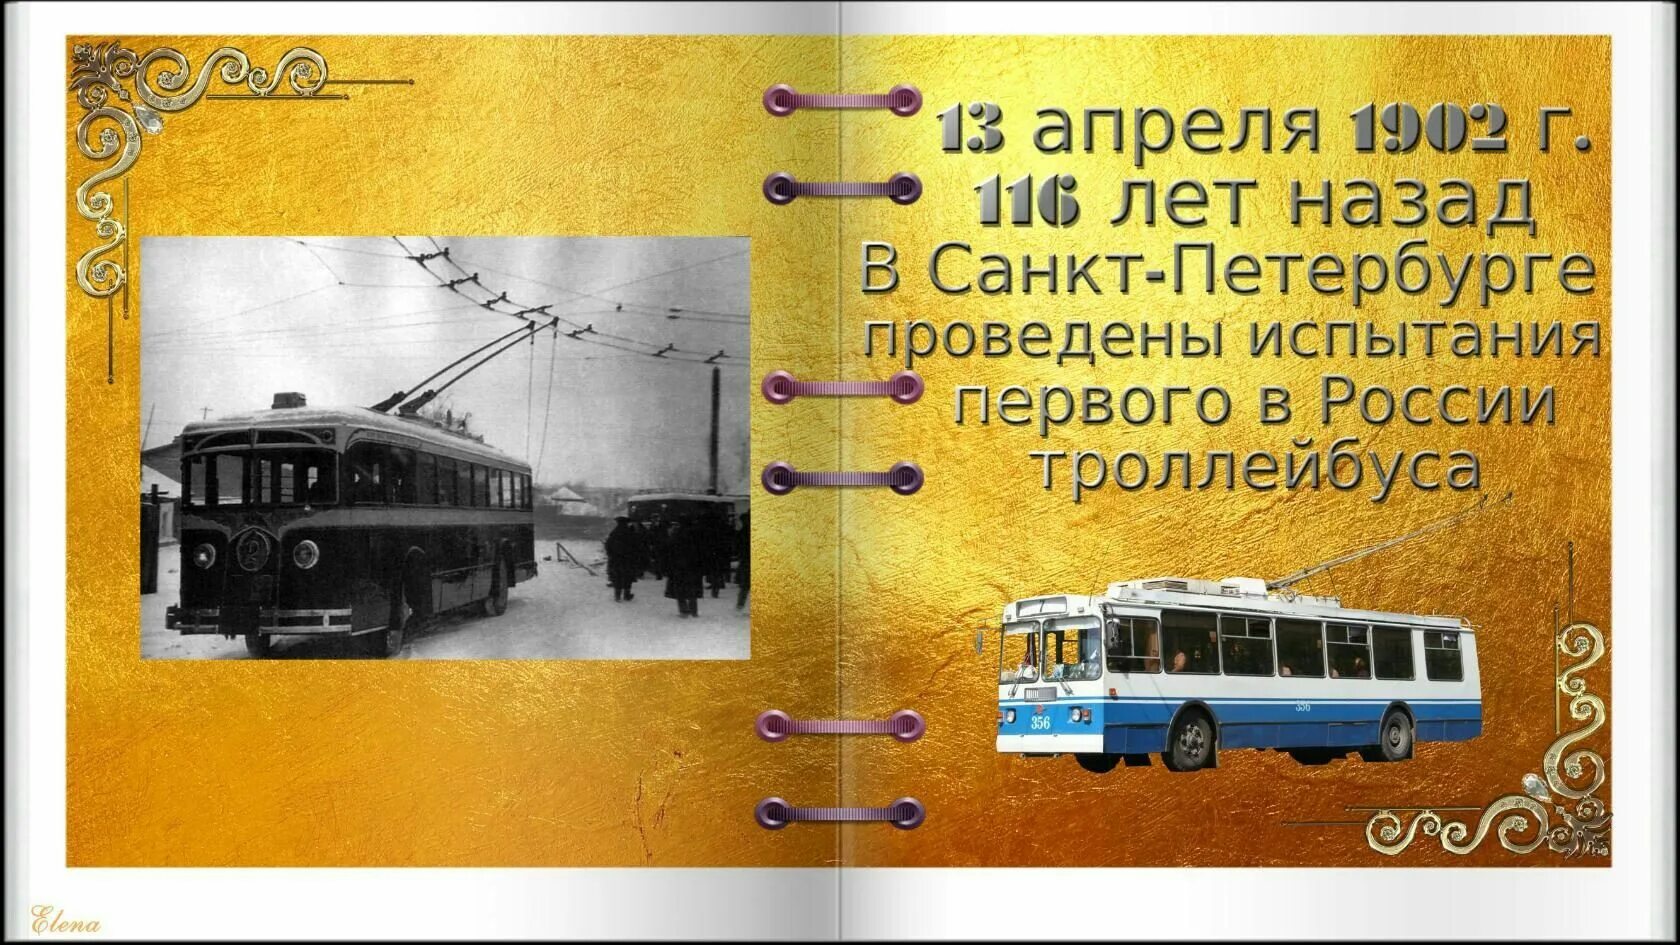 13 день троллейбуса. День рождения троллейбуса. День троллейбуса. Троллейбус юбилей. День троллейбуса открытка.